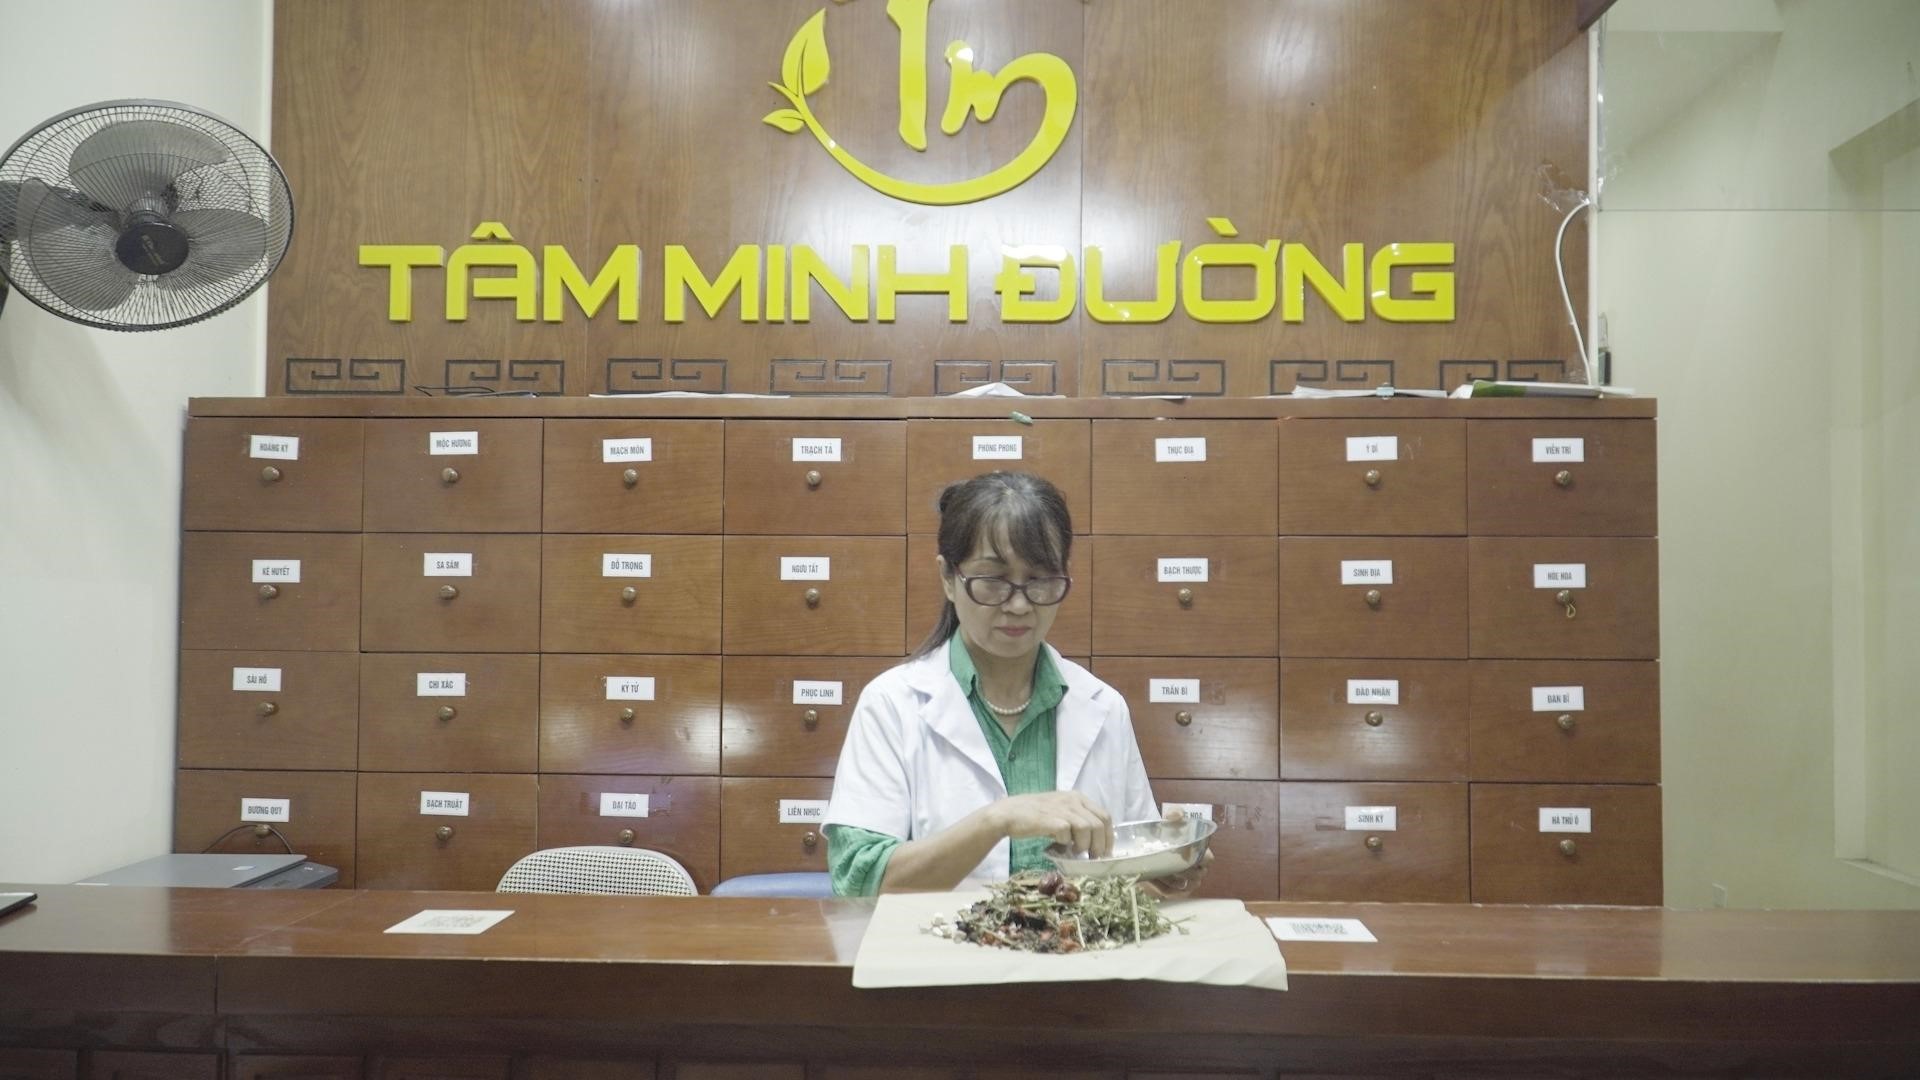 Cô Hoàng Ngọc Lan Tâm Minh Đường và bài thuốc nám hiệu quả 